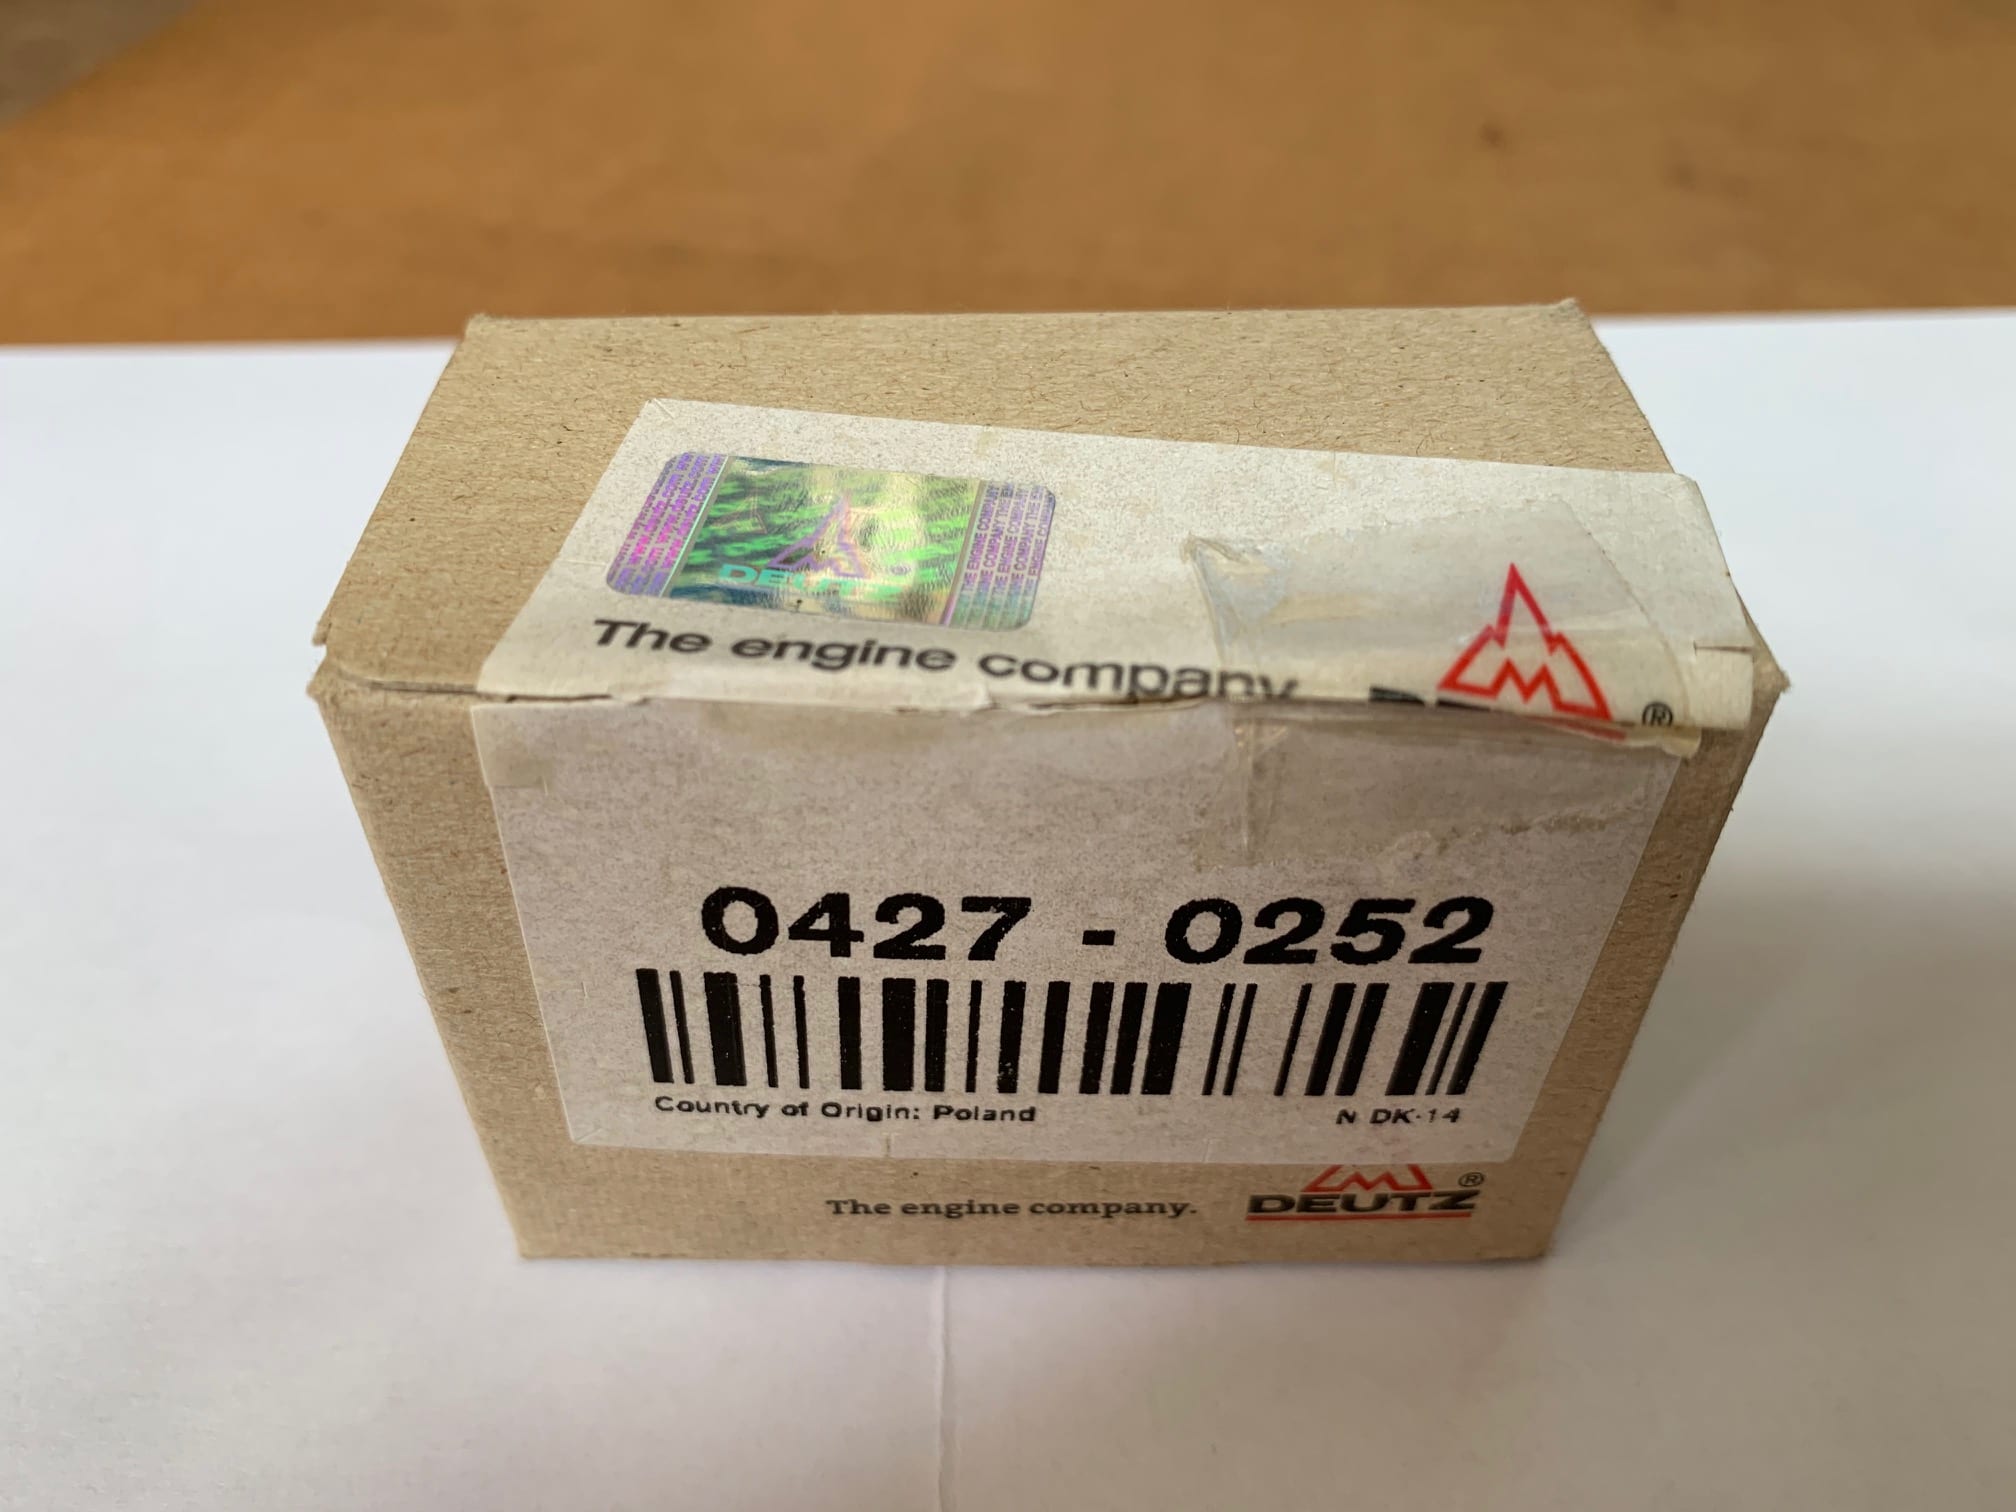 DEUTZ Genuine Spare Parts - Singapore Used Equipment Marketplace